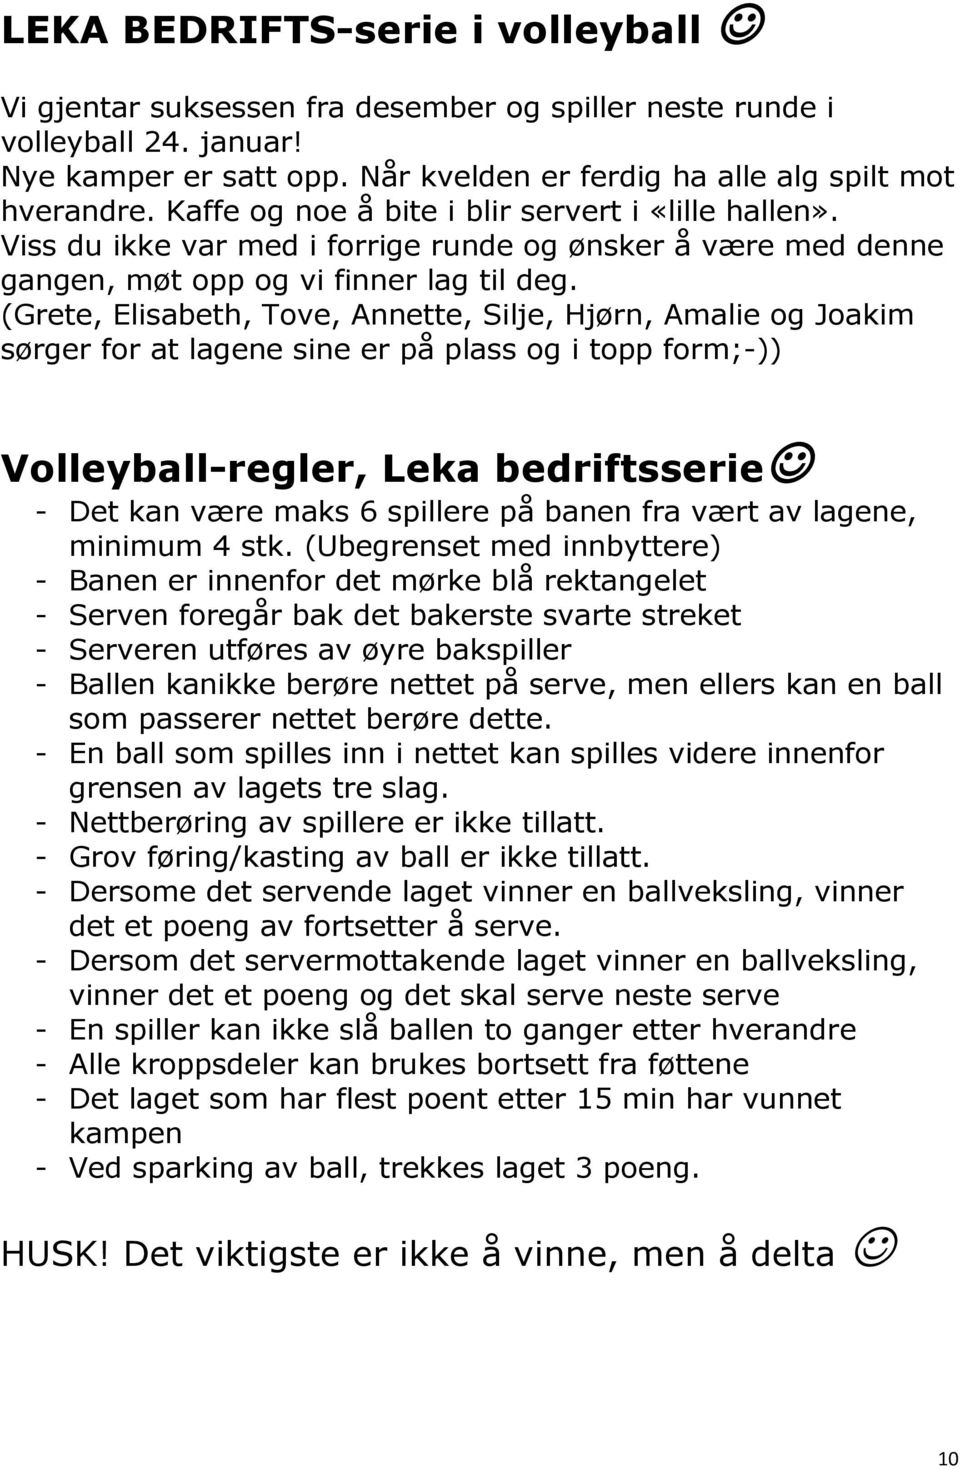 (Grete, Elisabeth, Tove, Annette, Silje, Hjørn, Amalie og Joakim sørger for at lagene sine er på plass og i topp form;-)) Volleyball-regler, Leka bedriftsserie - Det kan være maks 6 spillere på banen